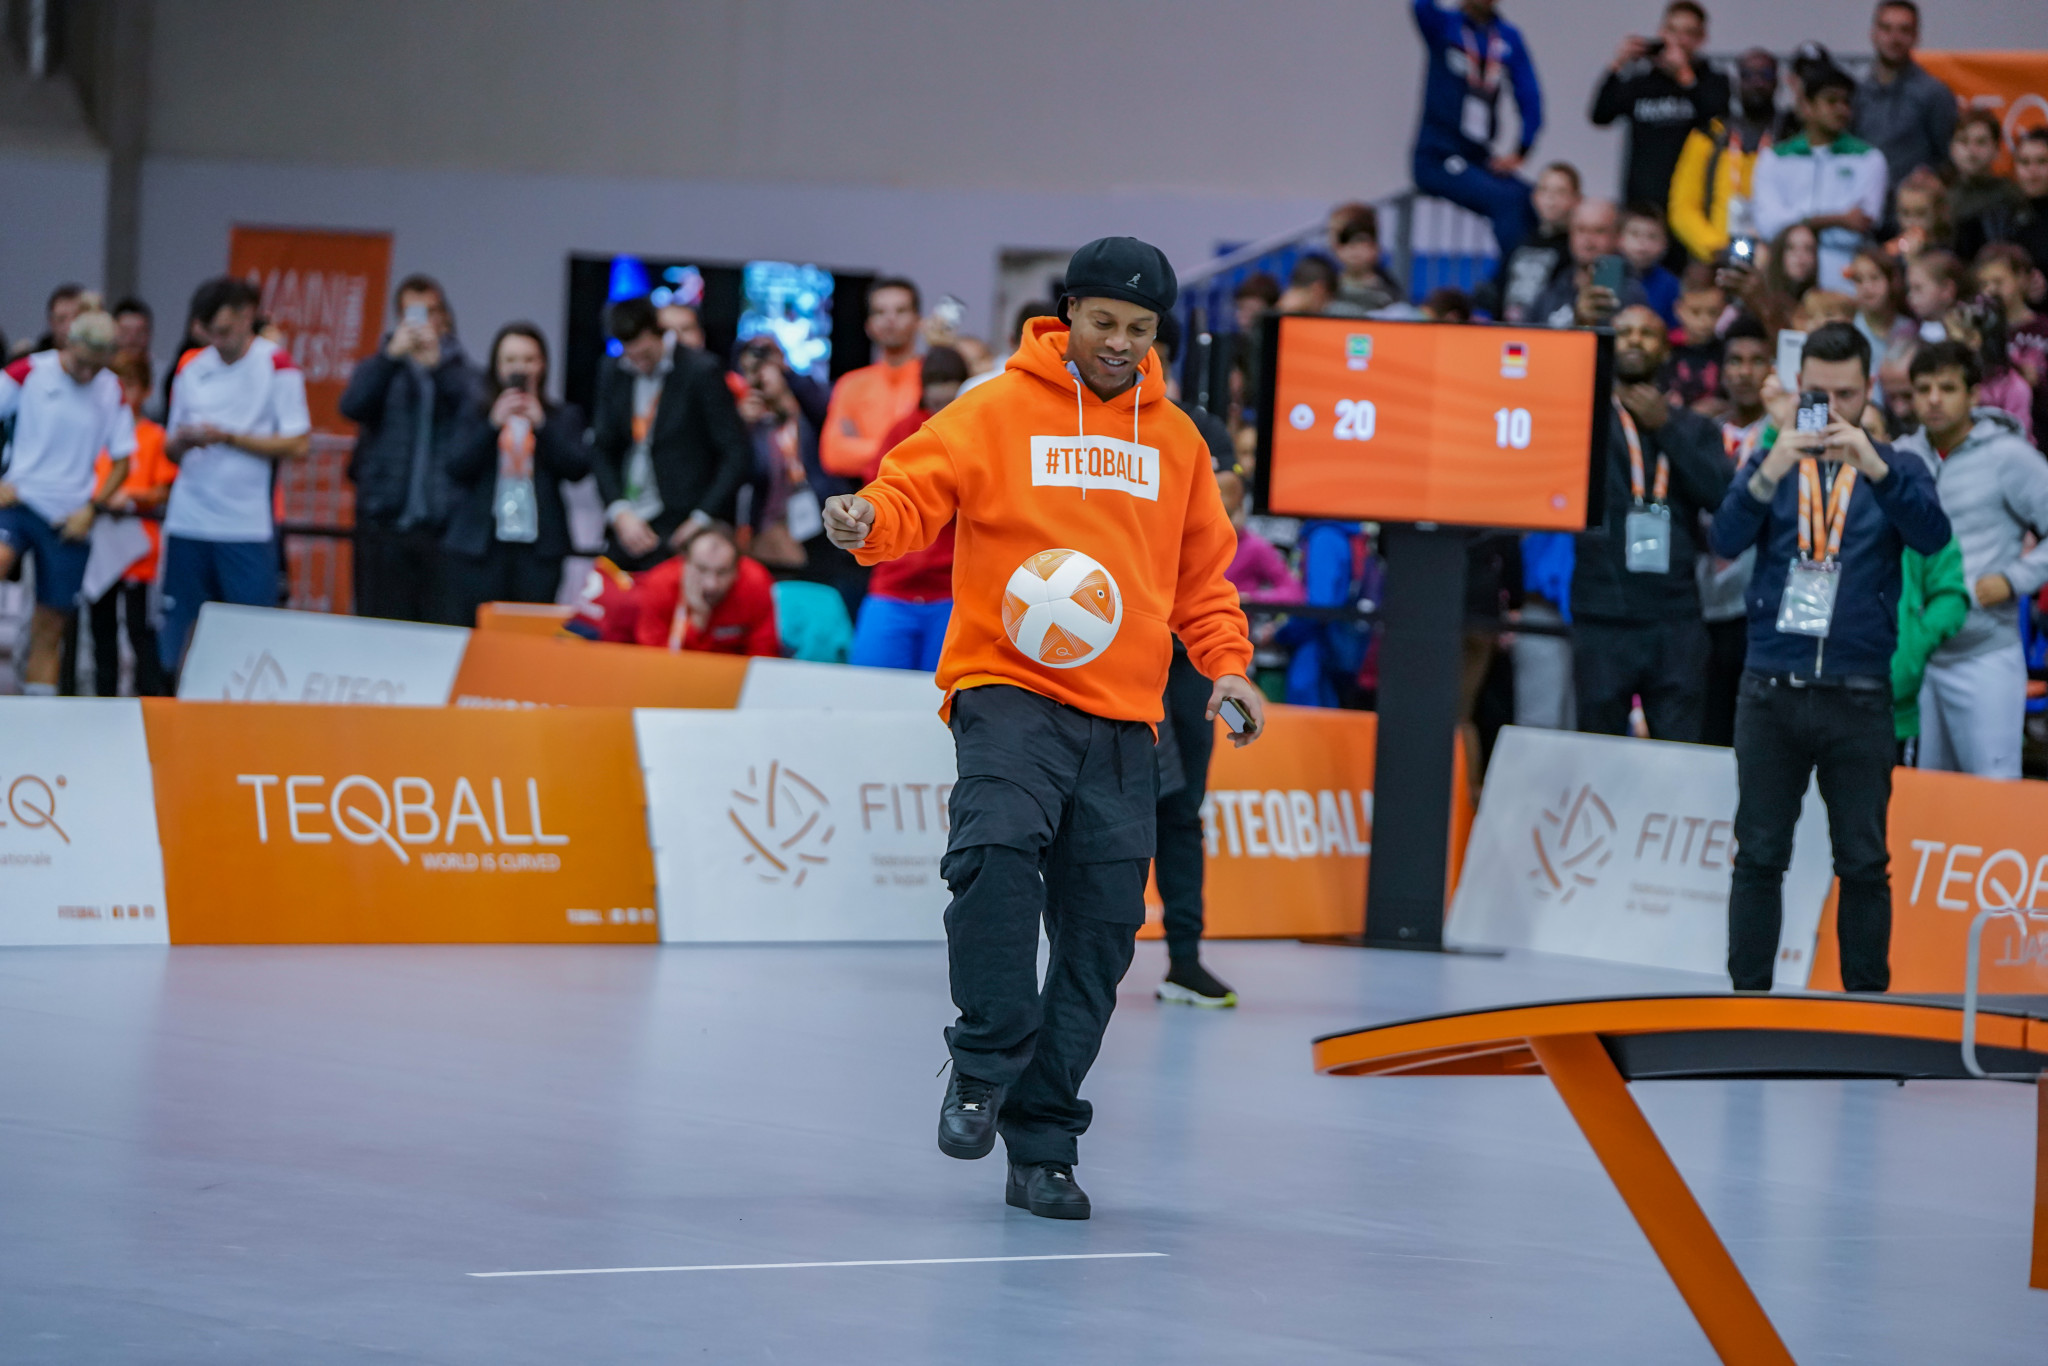 Ronaldinho shows off teqball skills at World Championships in Budapest